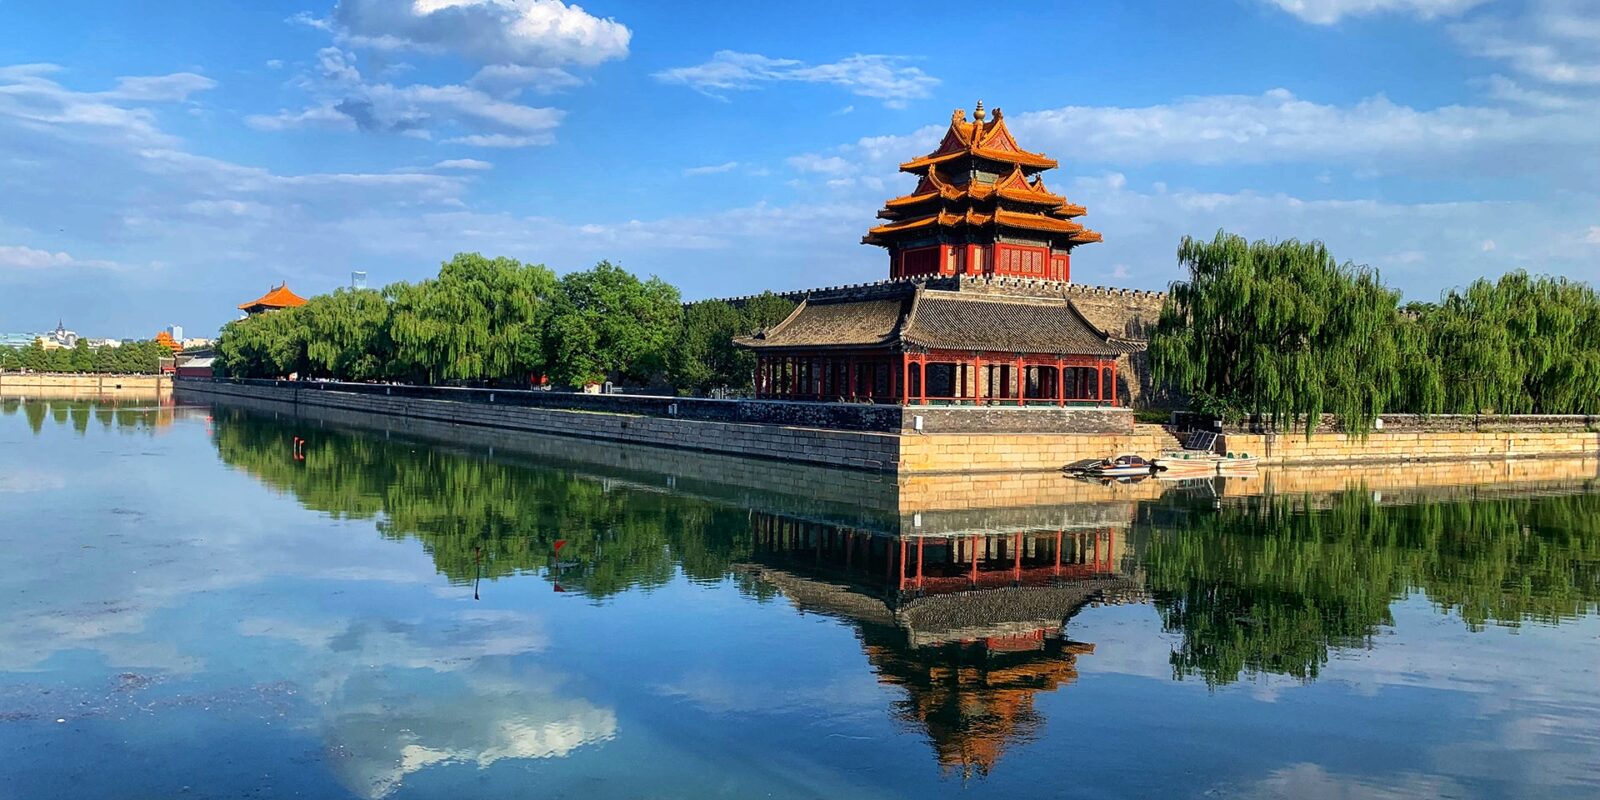 Beijing Forbidden City Corner Tower